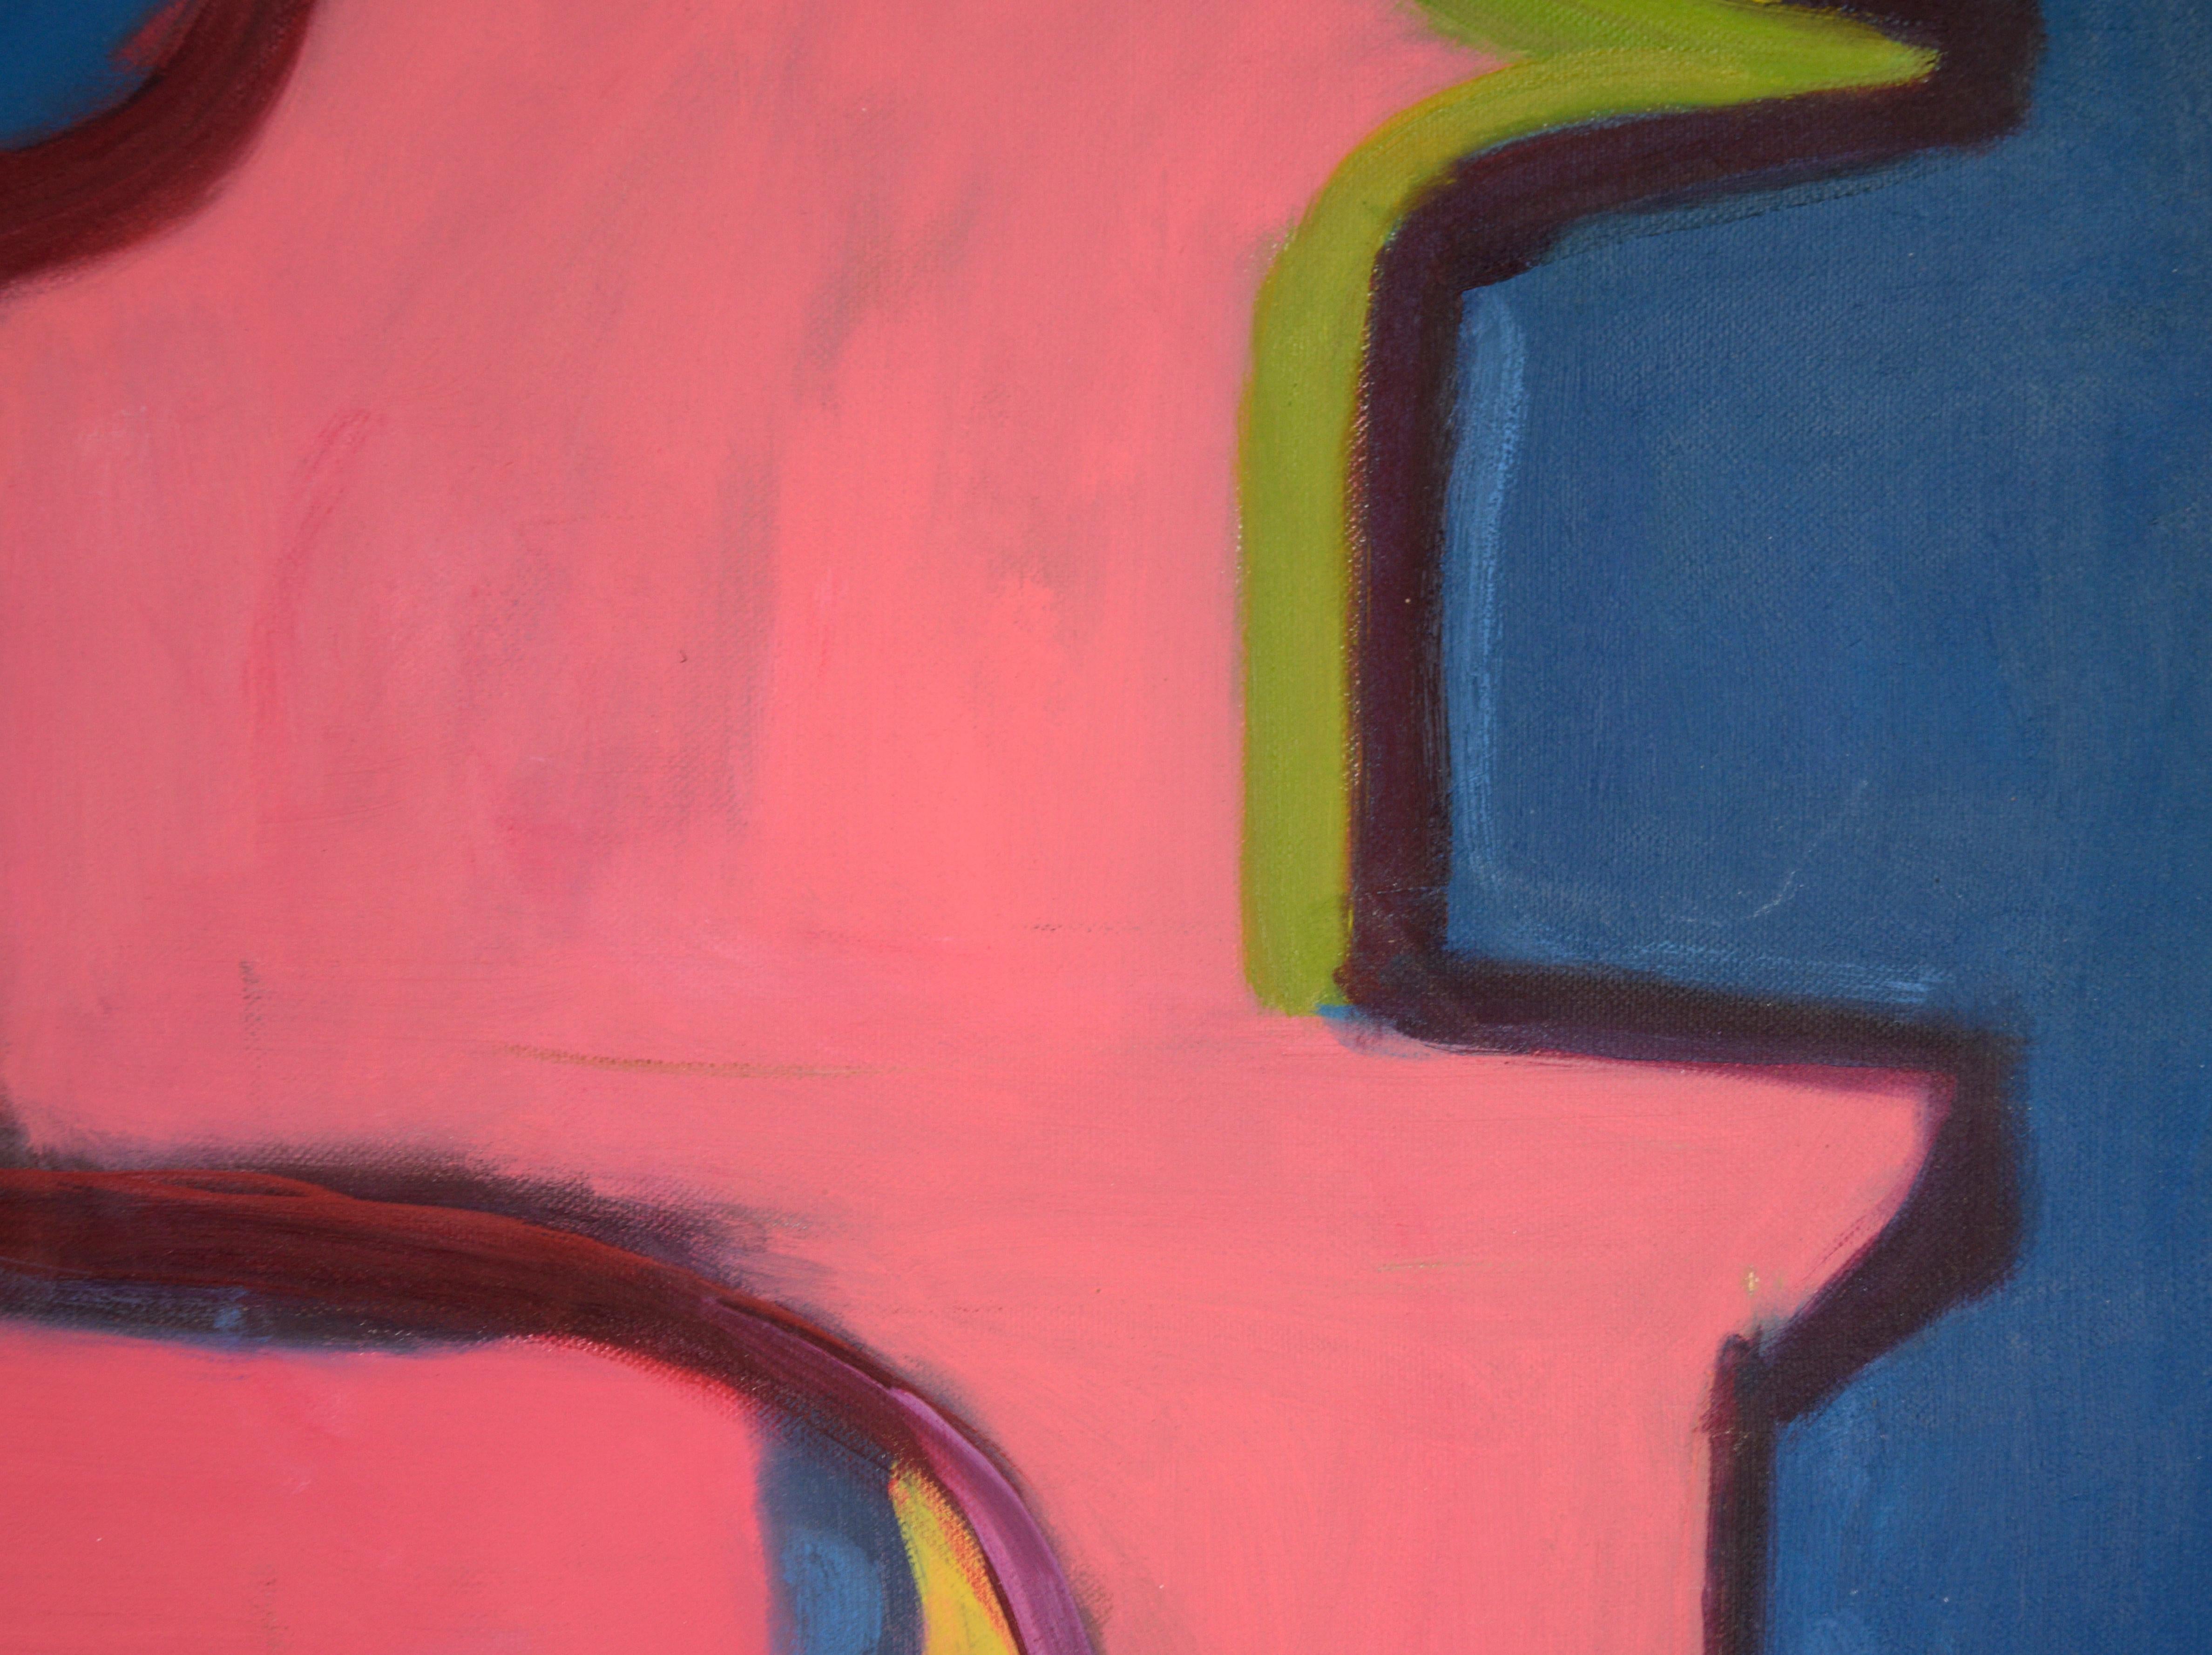 Lebendige Darstellung eines Innengartens von Gloria Takla (Amerikanerin/Deutsche, geb. 1940). Das in satten Farben gehaltene Werk zeigt einen einfachen Schnappschuss einer Palme, eingerahmt von einer leuchtend rosa Wand. Die Palme ist in einem